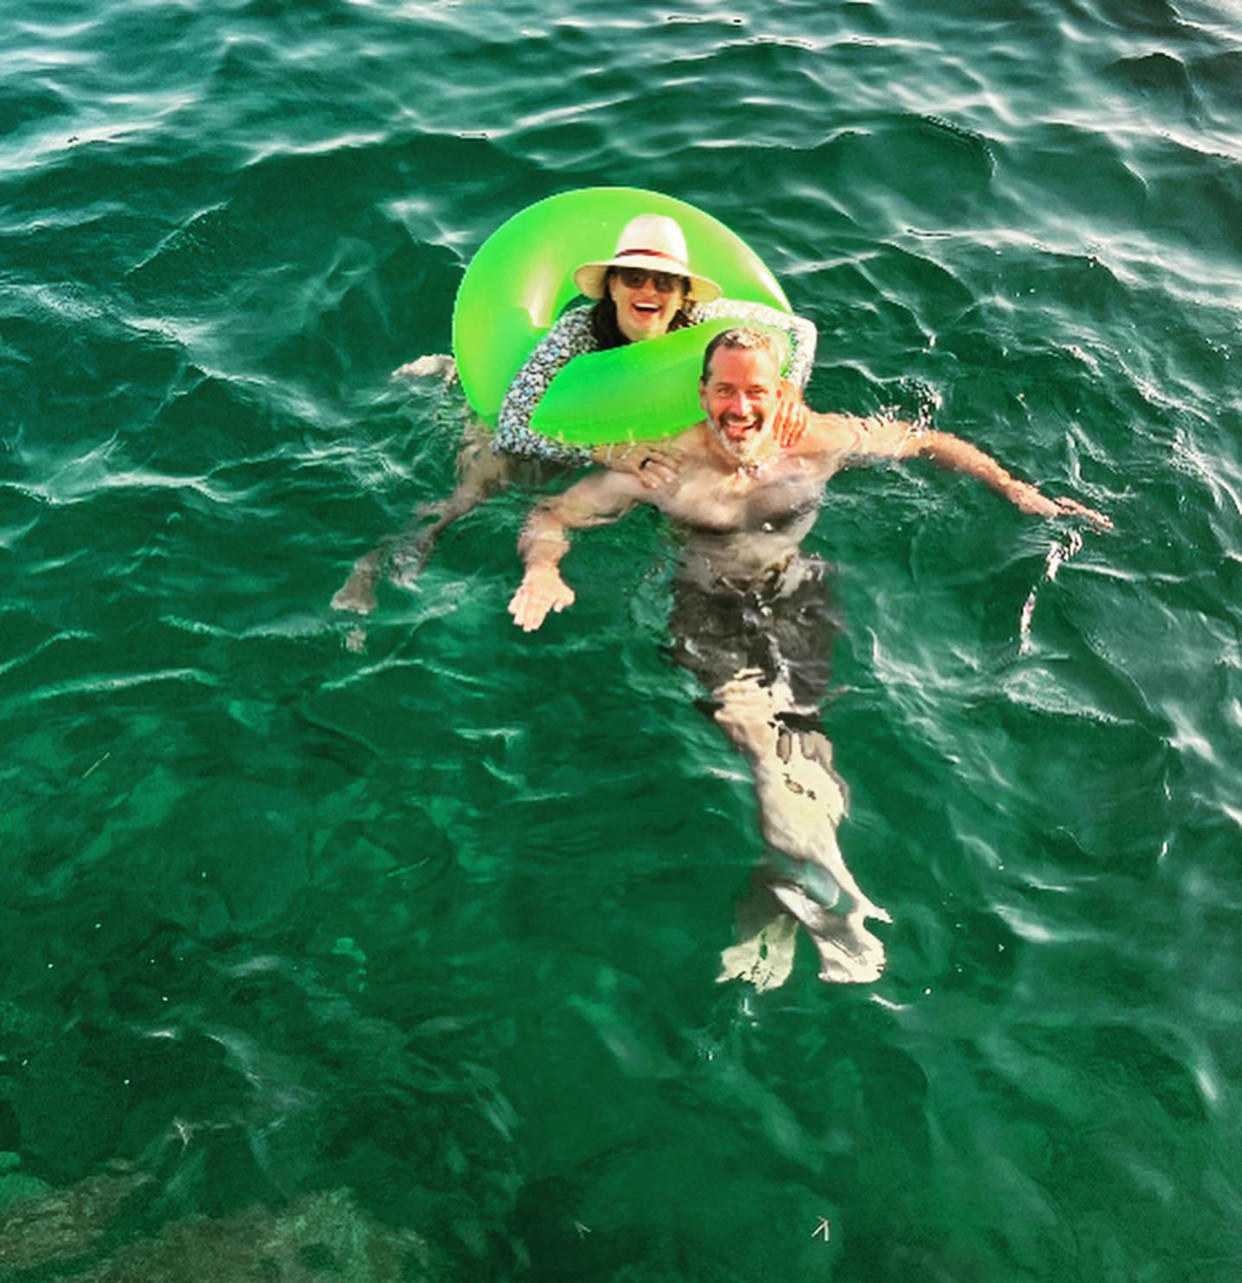 Mariska Hargitay and Peter Hermann are living their best life on vacation. (@herealmariskahargitay via Instagram)